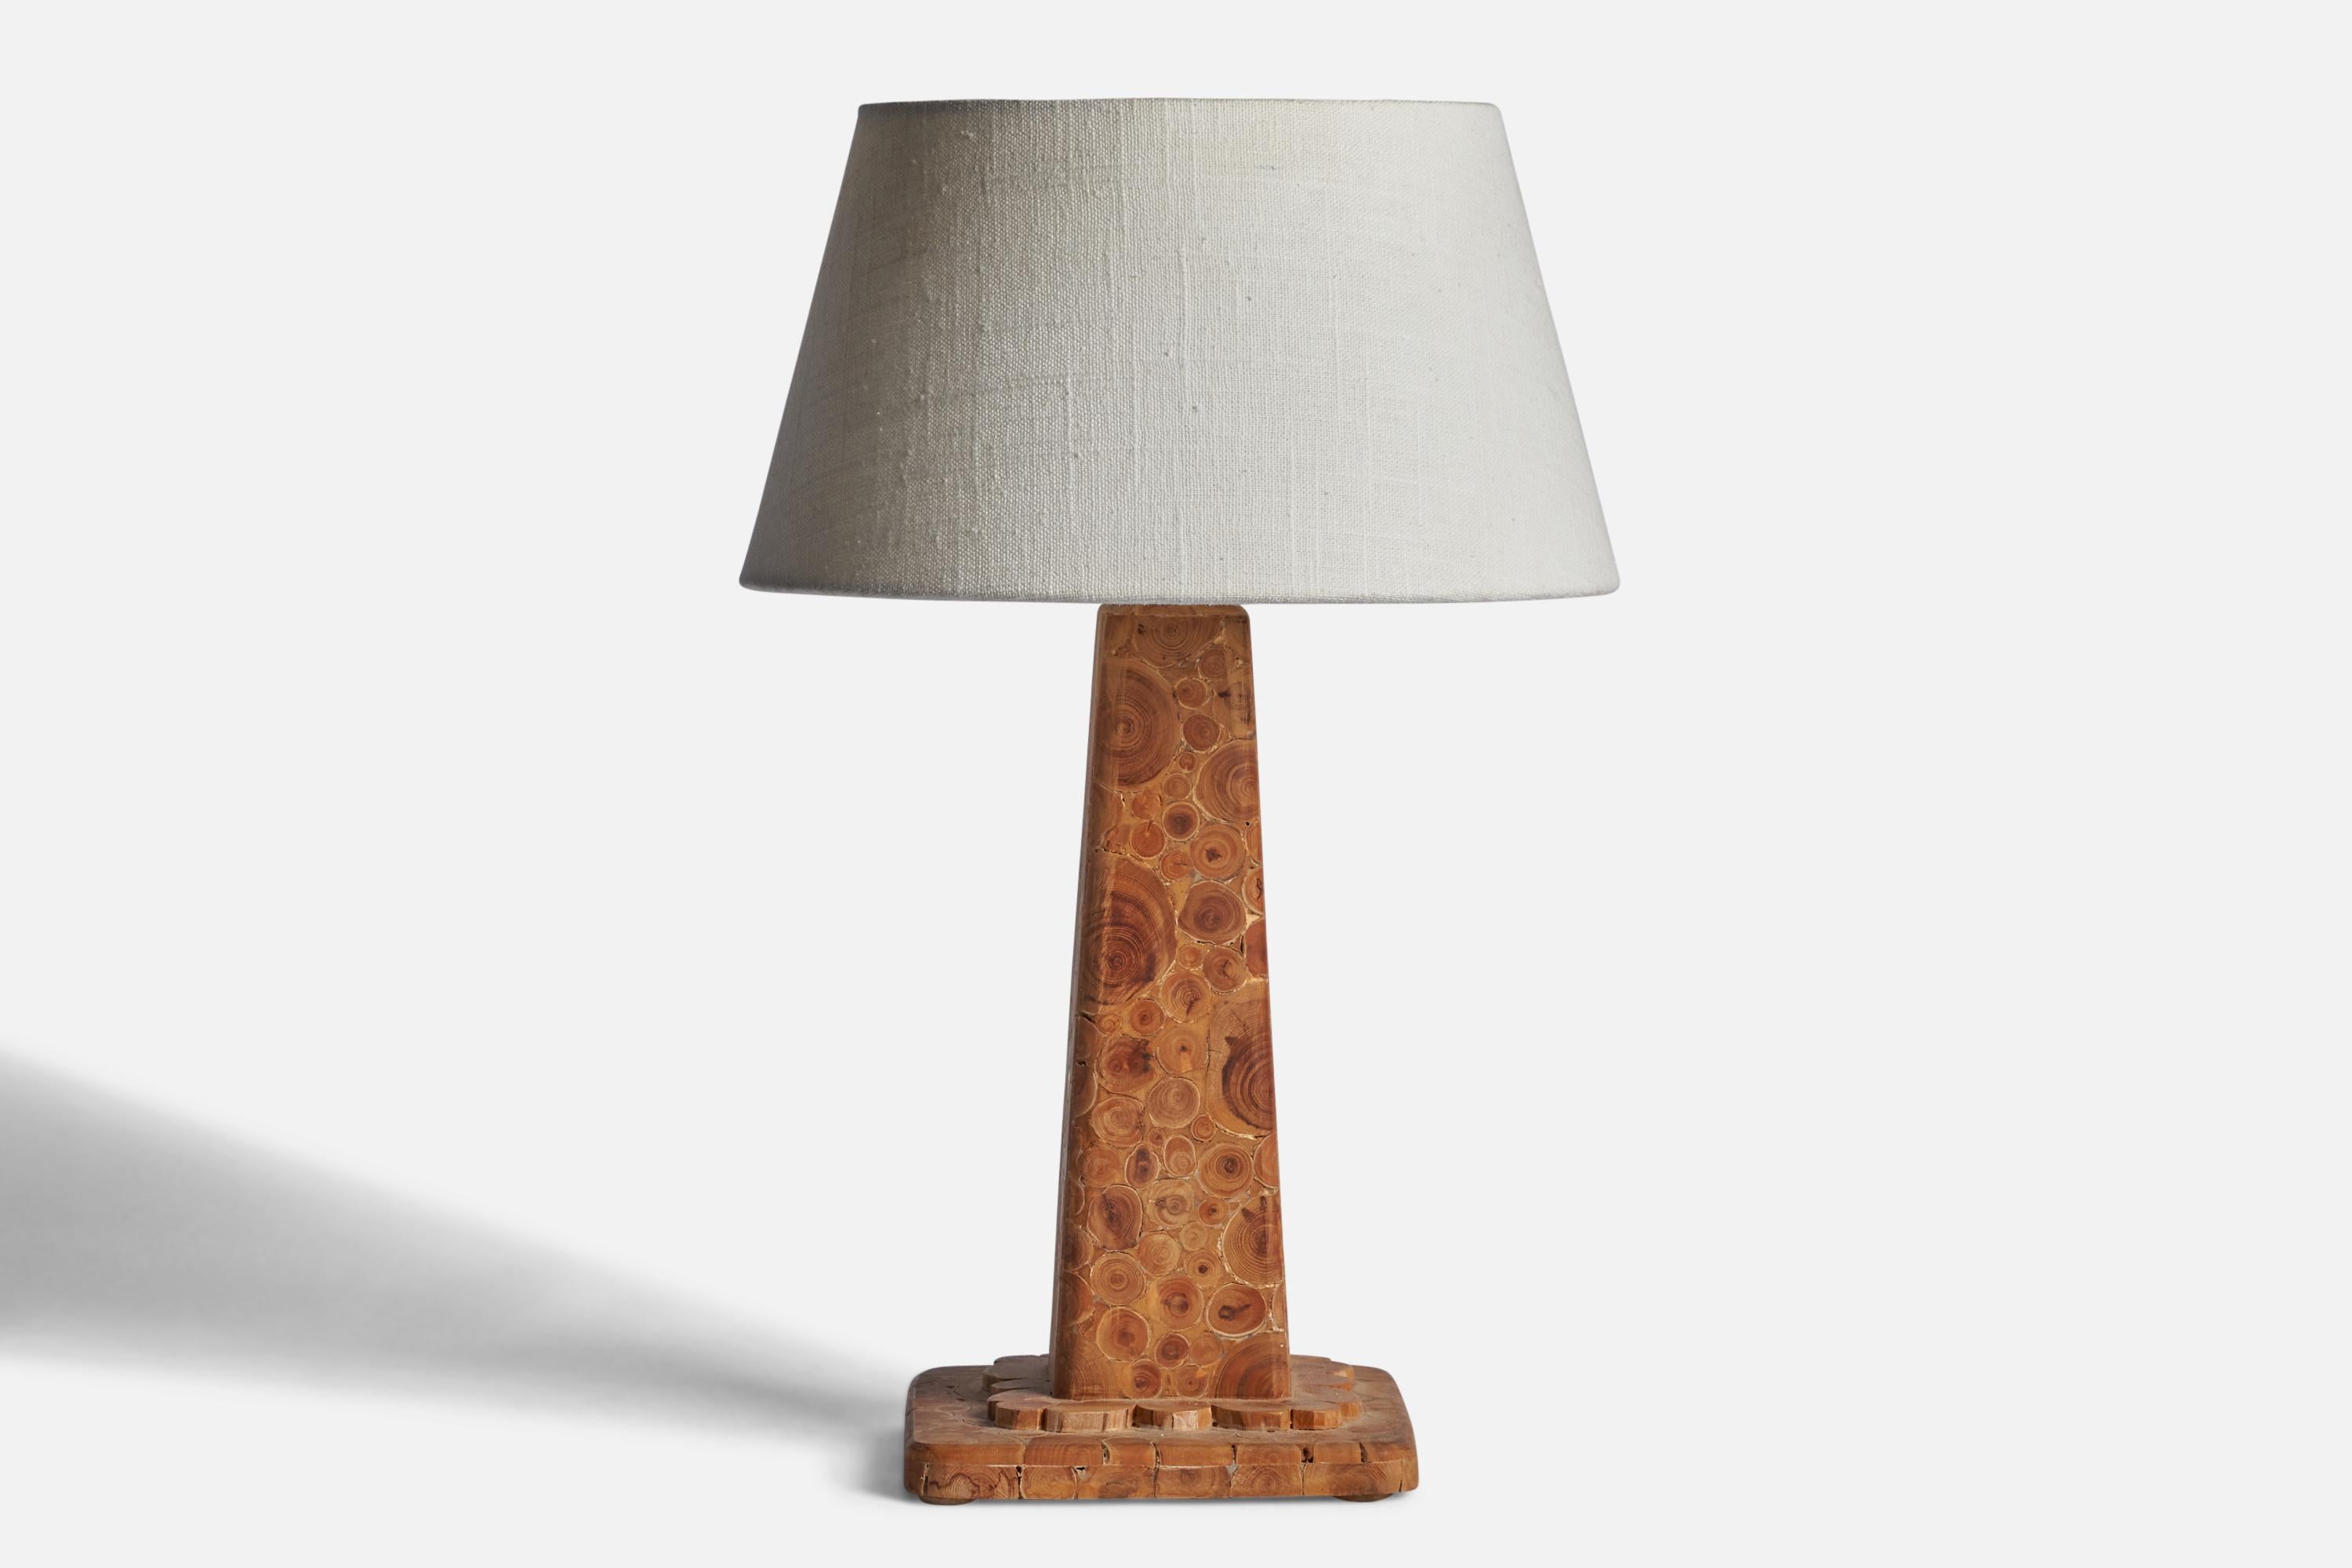 Lampe de table en placage de branches de bois, conçue et produite en Suède, datée de 1974.

Dimensions de la lampe (pouces) : 12.5